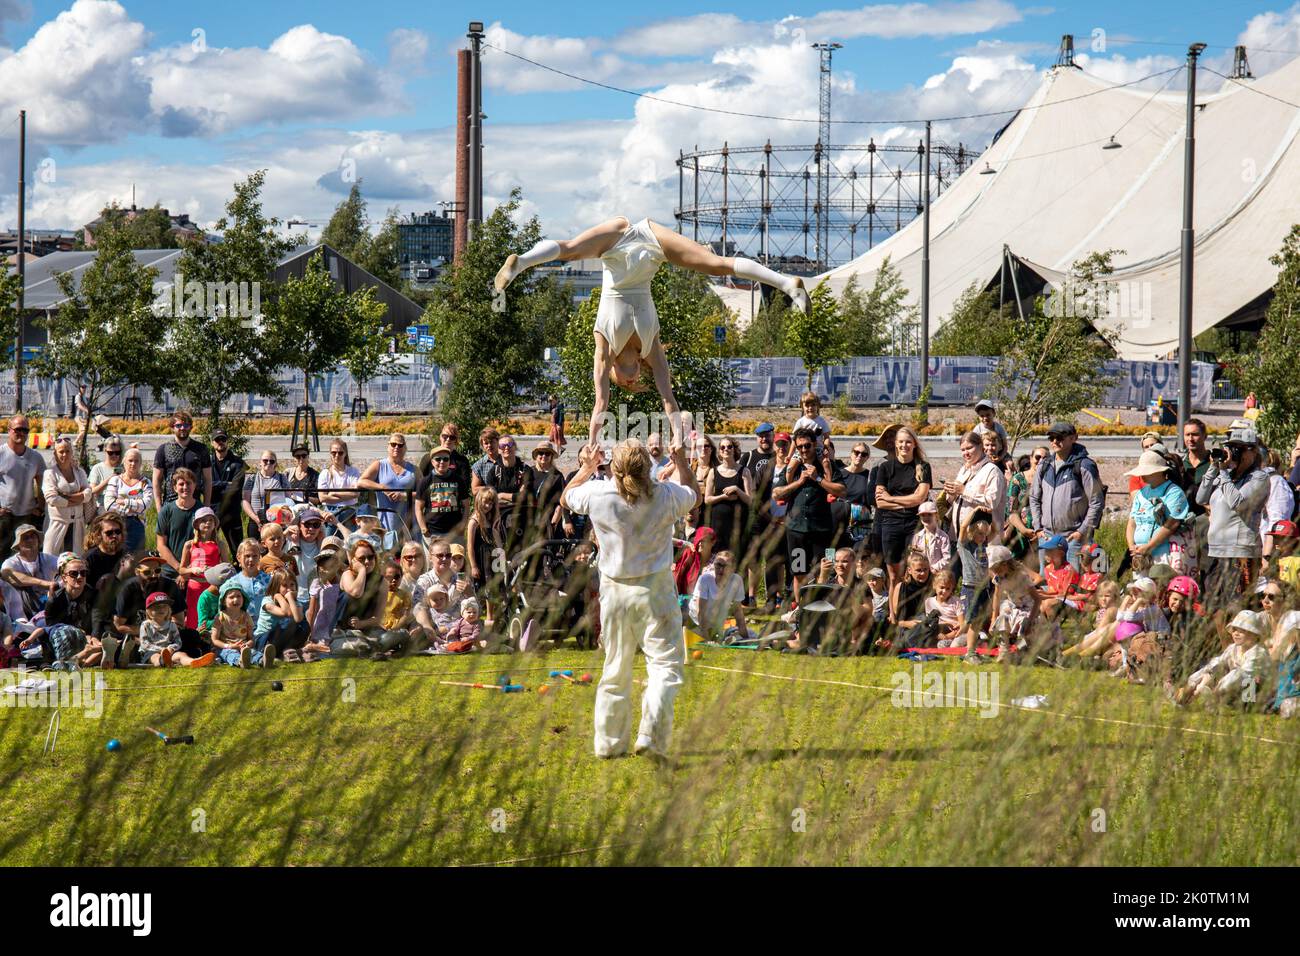 Espectáculo acrobático Pirie Poke de Ira Oinonen y Jere Virta en Katusirkuskarnevaali en el distrito Kalasatama de Helsinki, Finlandia Foto de stock